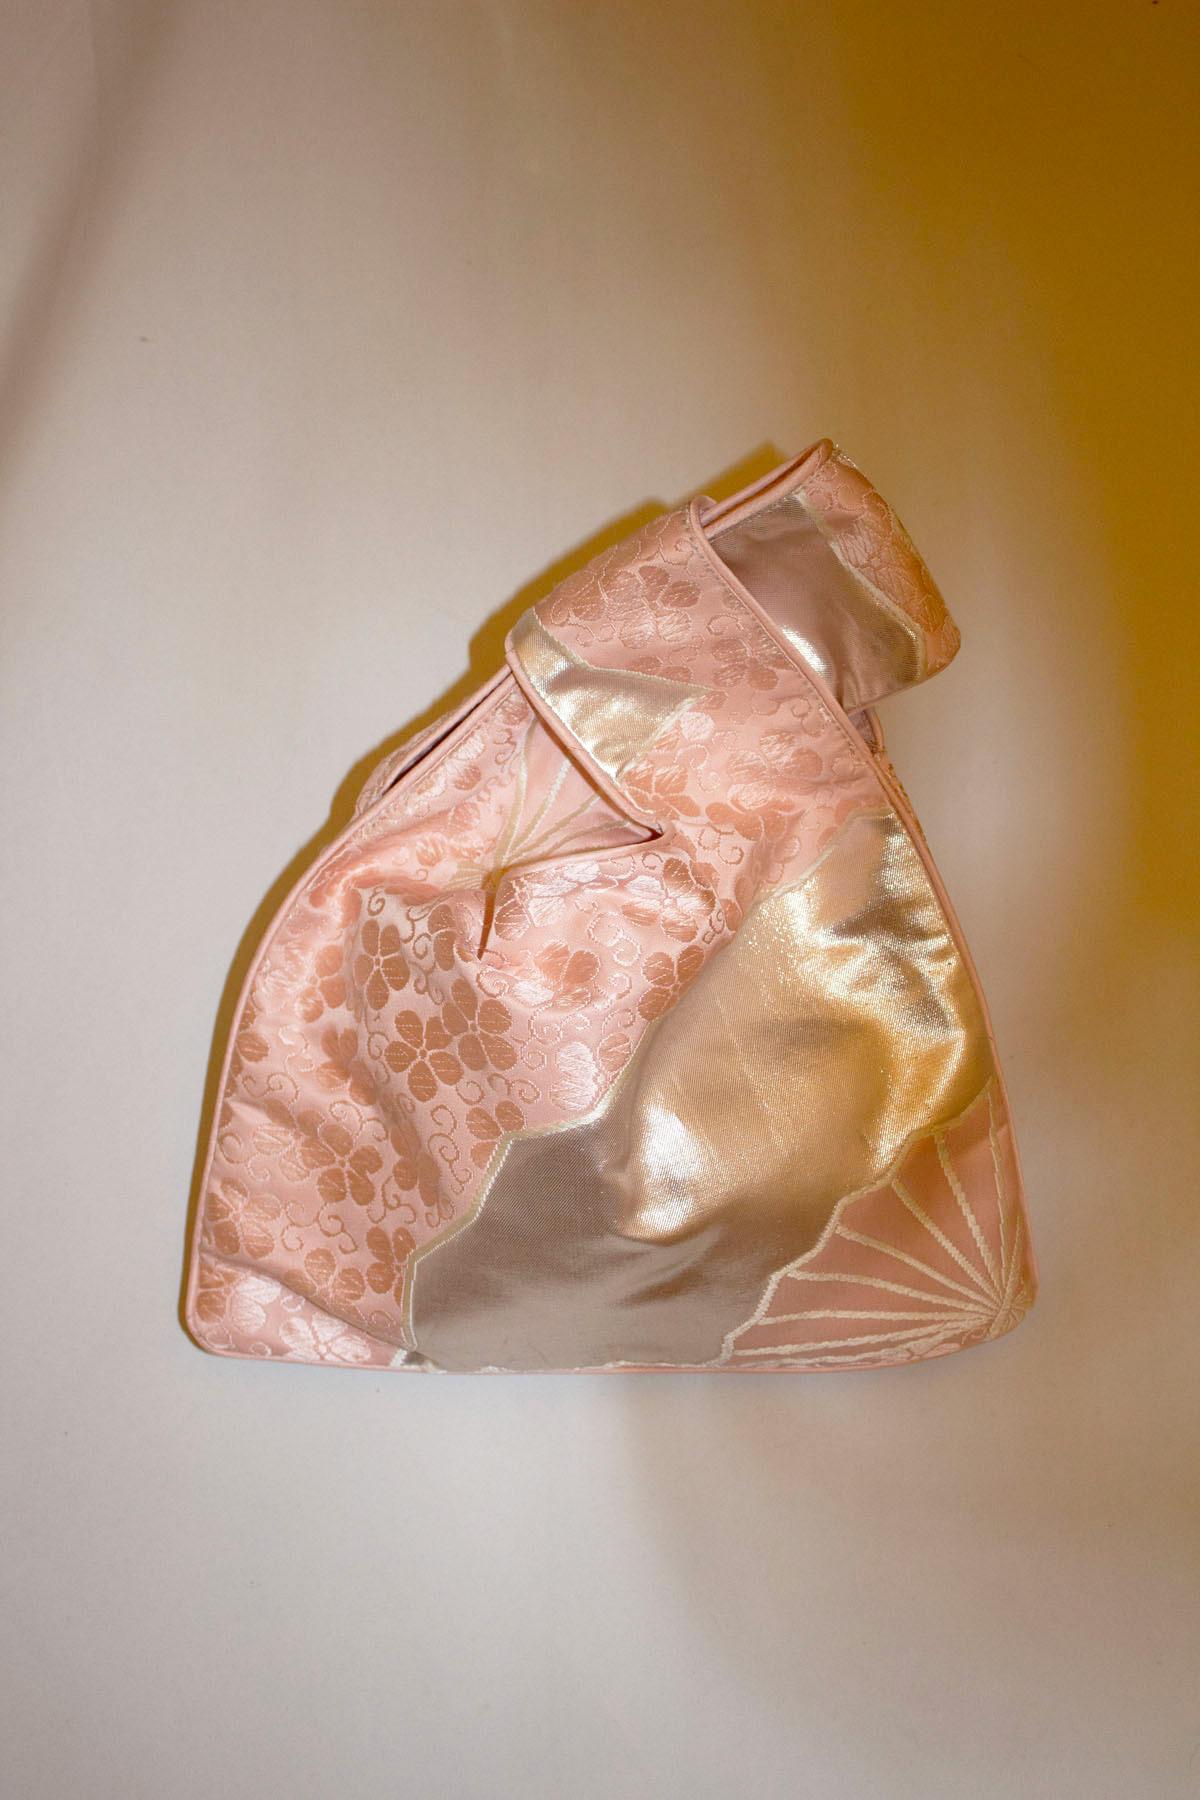 Eine hübsche und einfach zu handhabende Vintage-Handtasche aus seltenen alten Obi-Gürteln. Die Tasche ist in einem rosa, silbernen und floralen Design gehalten und die Henkel lassen sich einfach ineinander stecken. Die Tasche ist vollständig